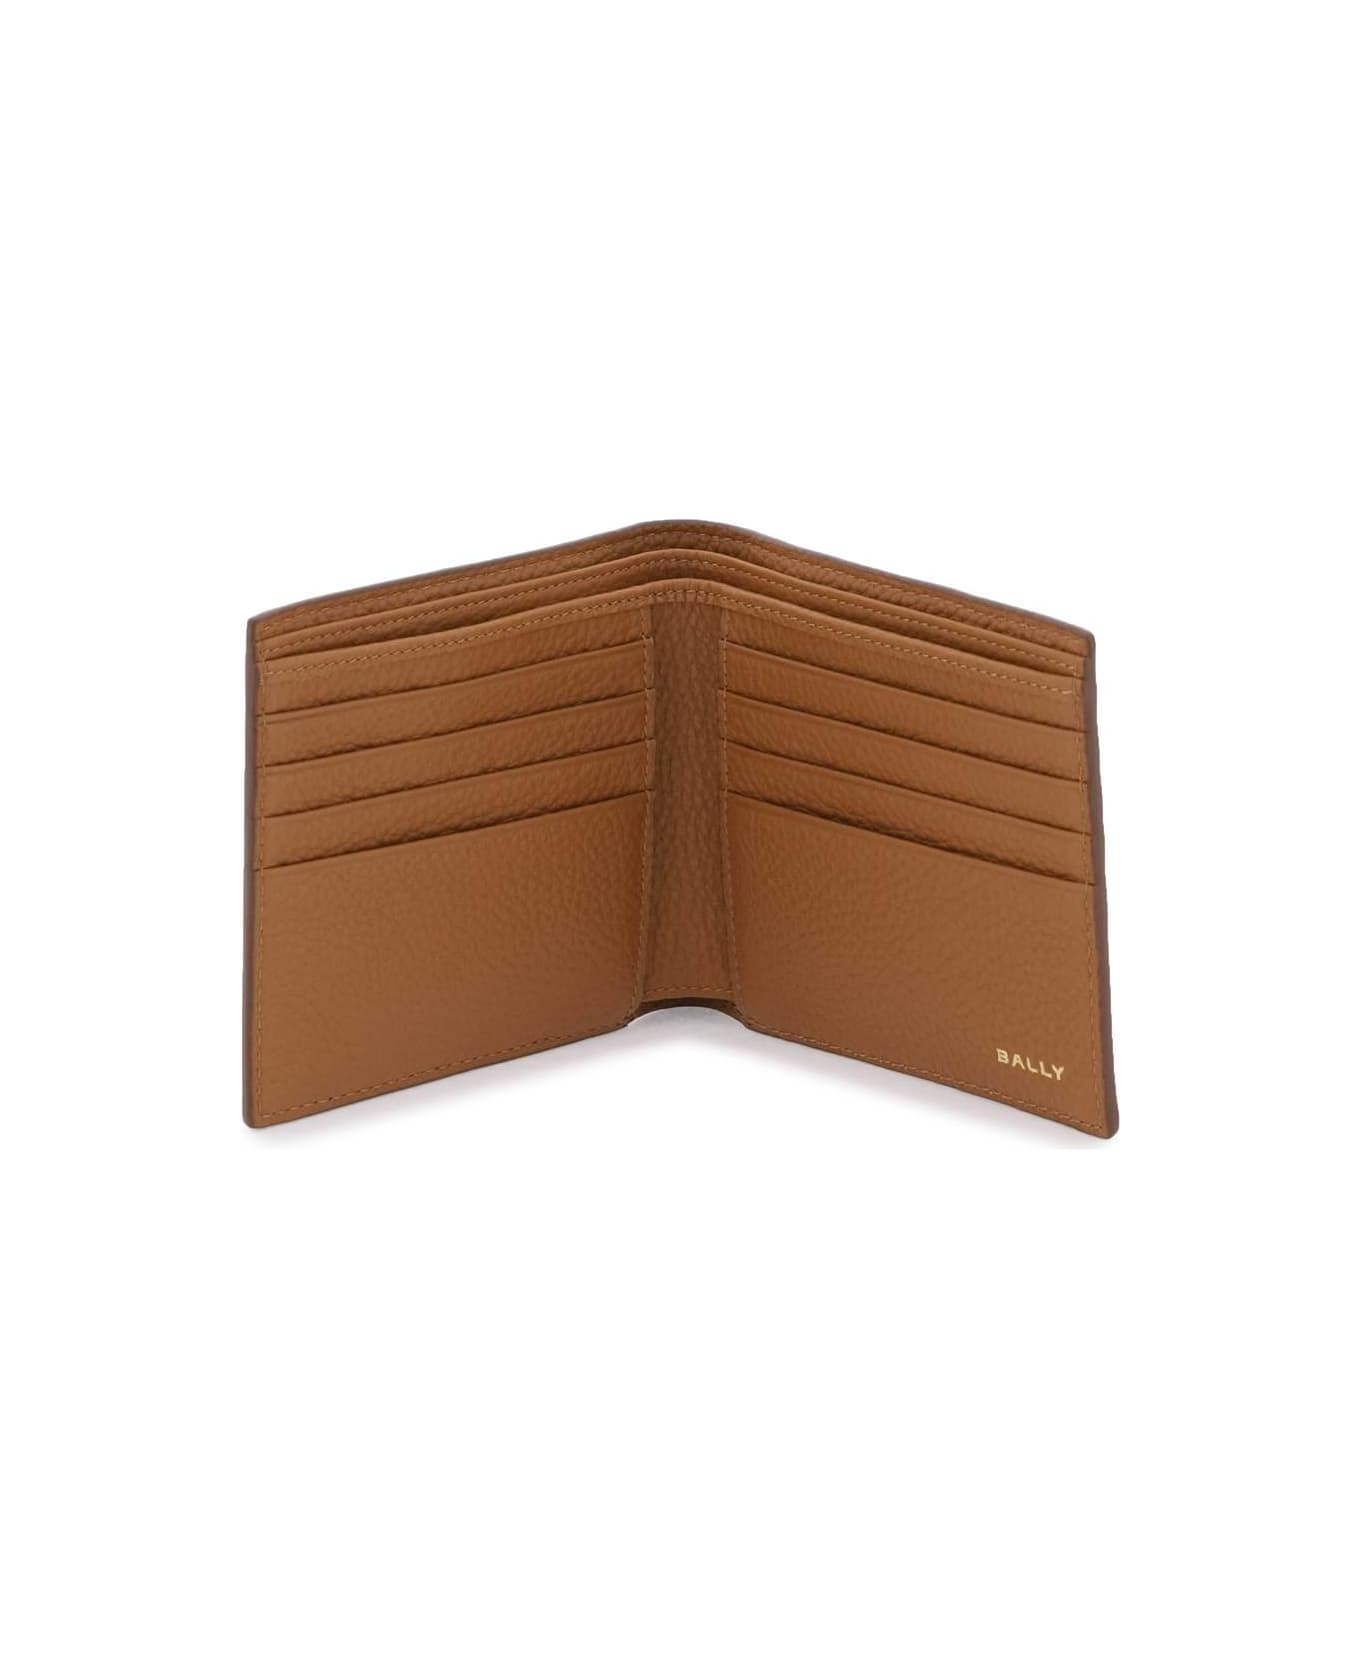 Bally Pennant Bi-fold Wallet - MULTIDESERTO ORO (Brown)